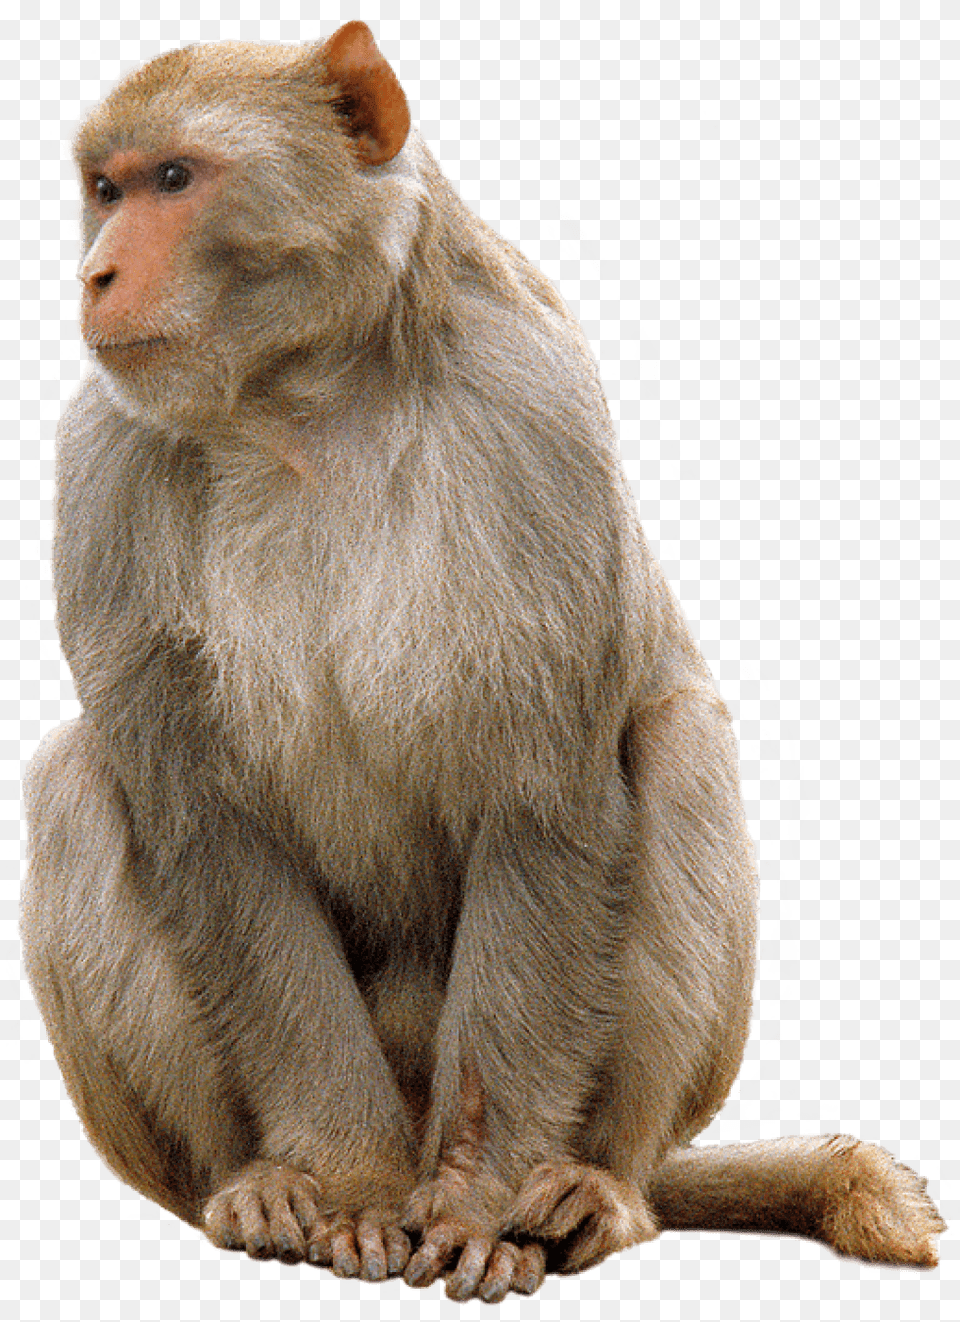 Monkey Sitting, Animal, Mammal, Wildlife, Baboon Free Png Download